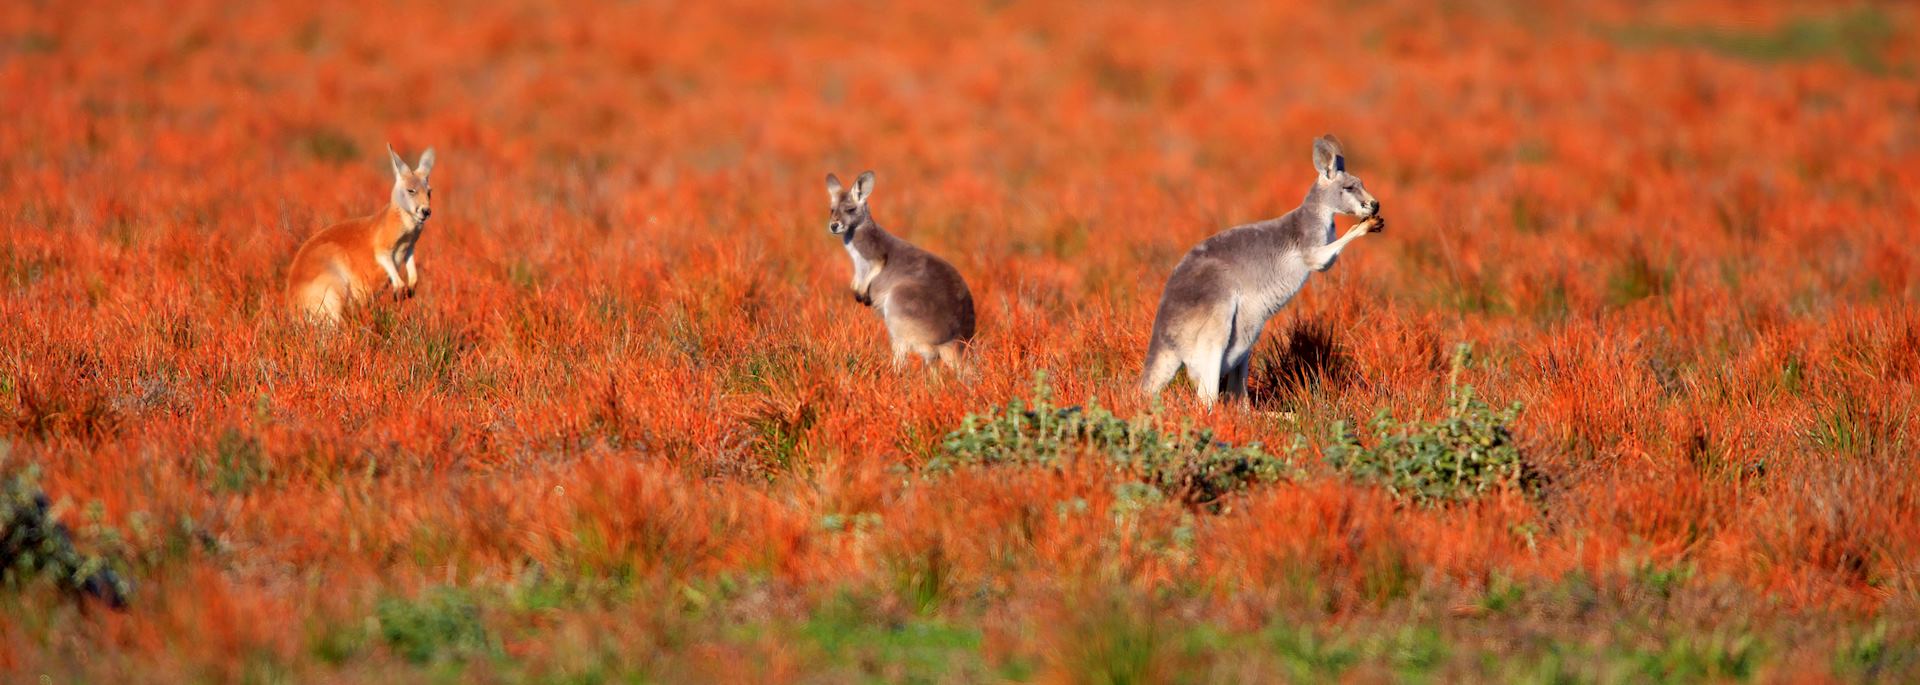 Kangaroos in the Flinders Ranges, South Australia